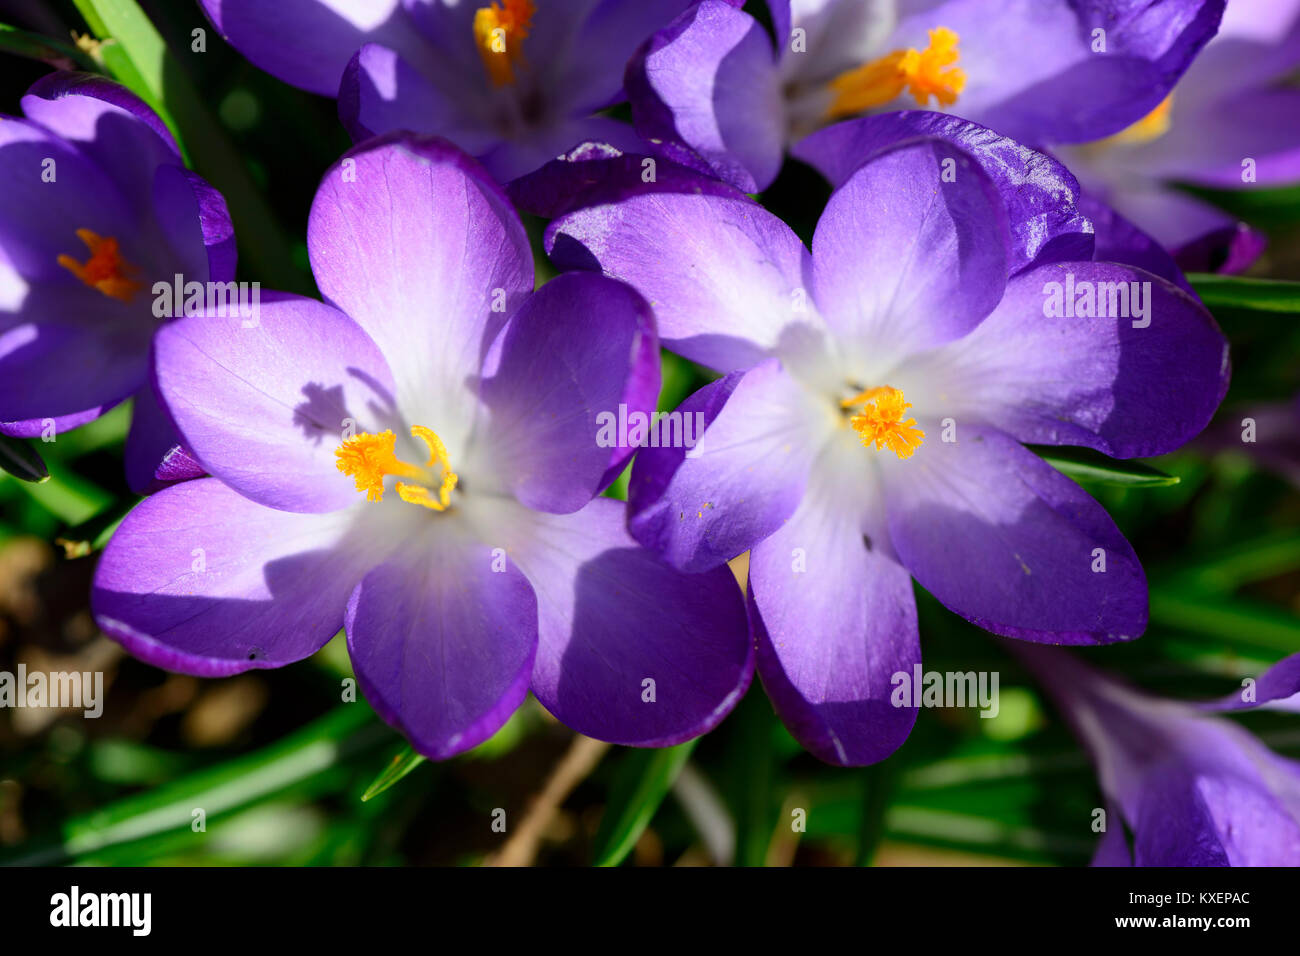 Purple crocuses (Crocus),Bavaria,Germany Stock Photo